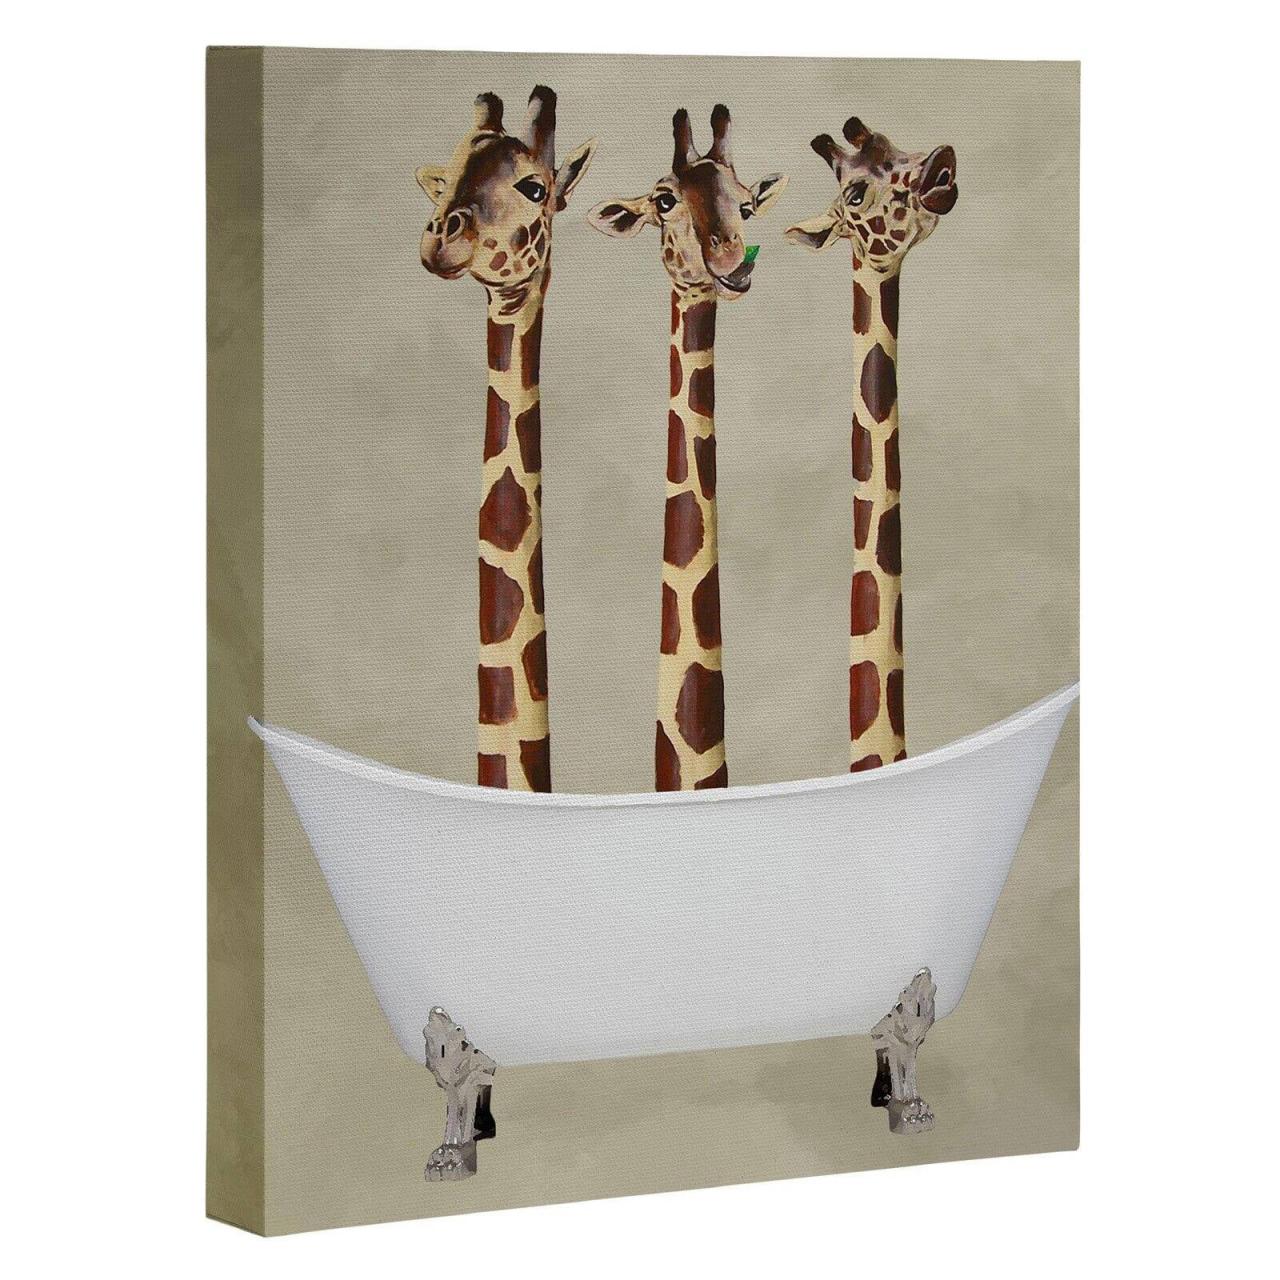 Deny Designs 3 Giraffes In Bathtub Canvas Wall Art